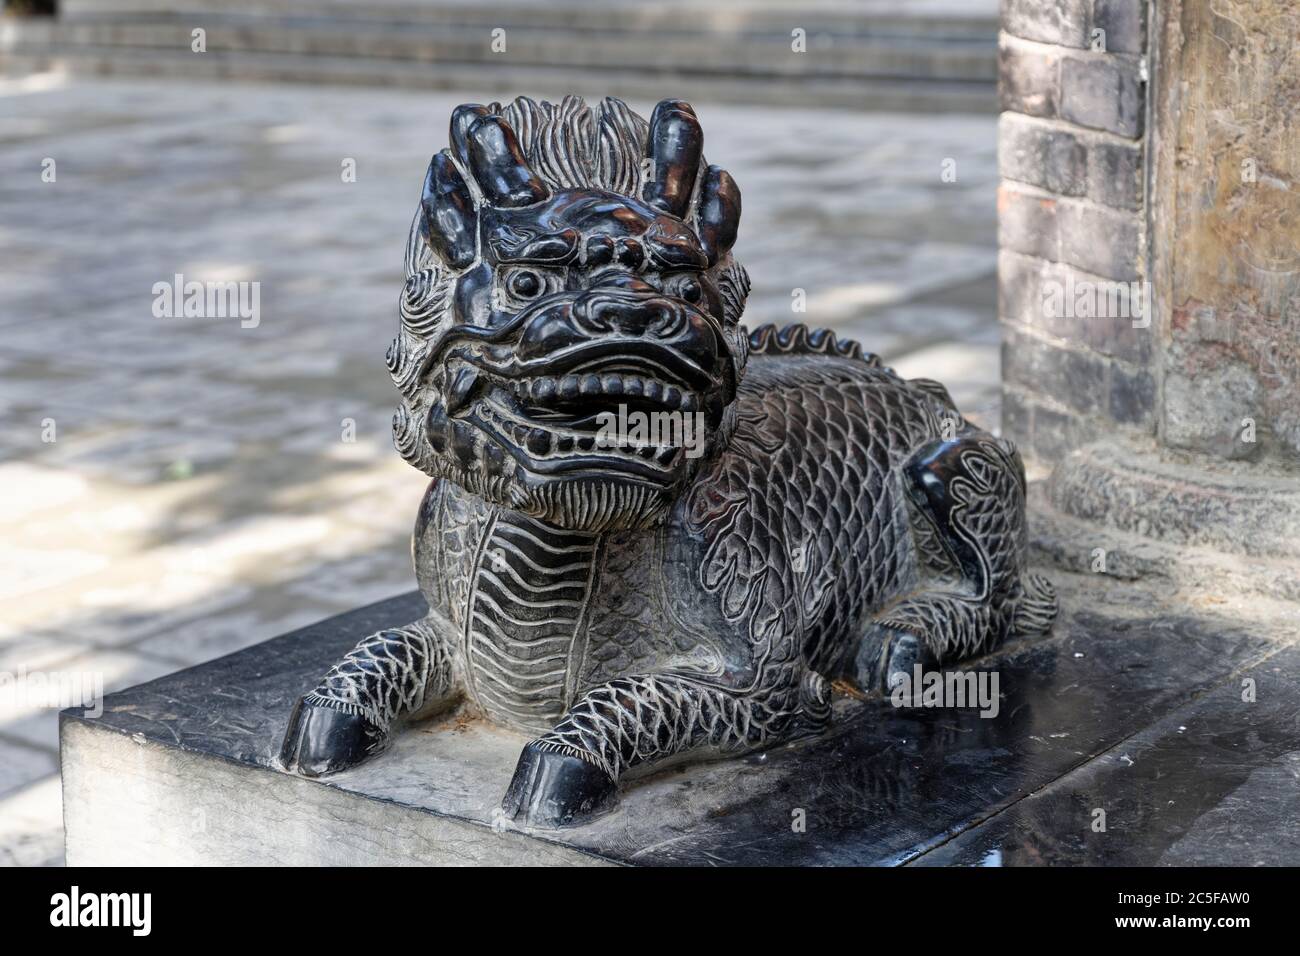 Mythical creature, Shaolin monastery, Shaolinsi, Henan province, China Stock Photo